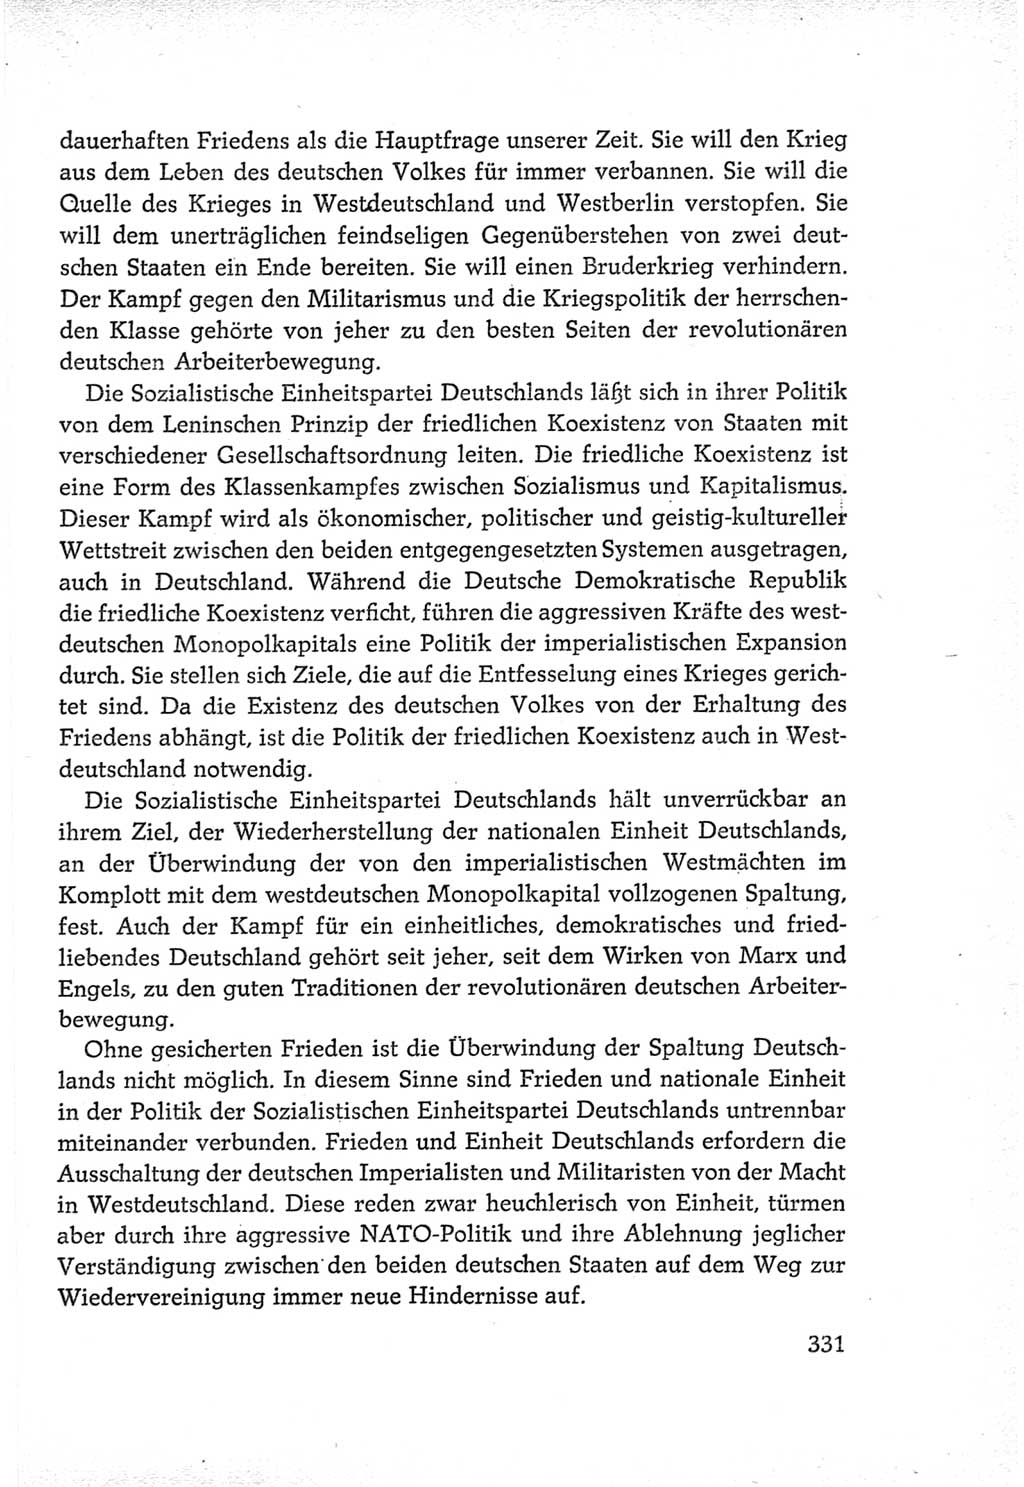 Protokoll der Verhandlungen des Ⅵ. Parteitages der Sozialistischen Einheitspartei Deutschlands (SED) [Deutsche Demokratische Republik (DDR)] 1963, Band Ⅳ, Seite 331 (Prot. Verh. Ⅵ. PT SED DDR 1963, Bd. Ⅳ, S. 331)